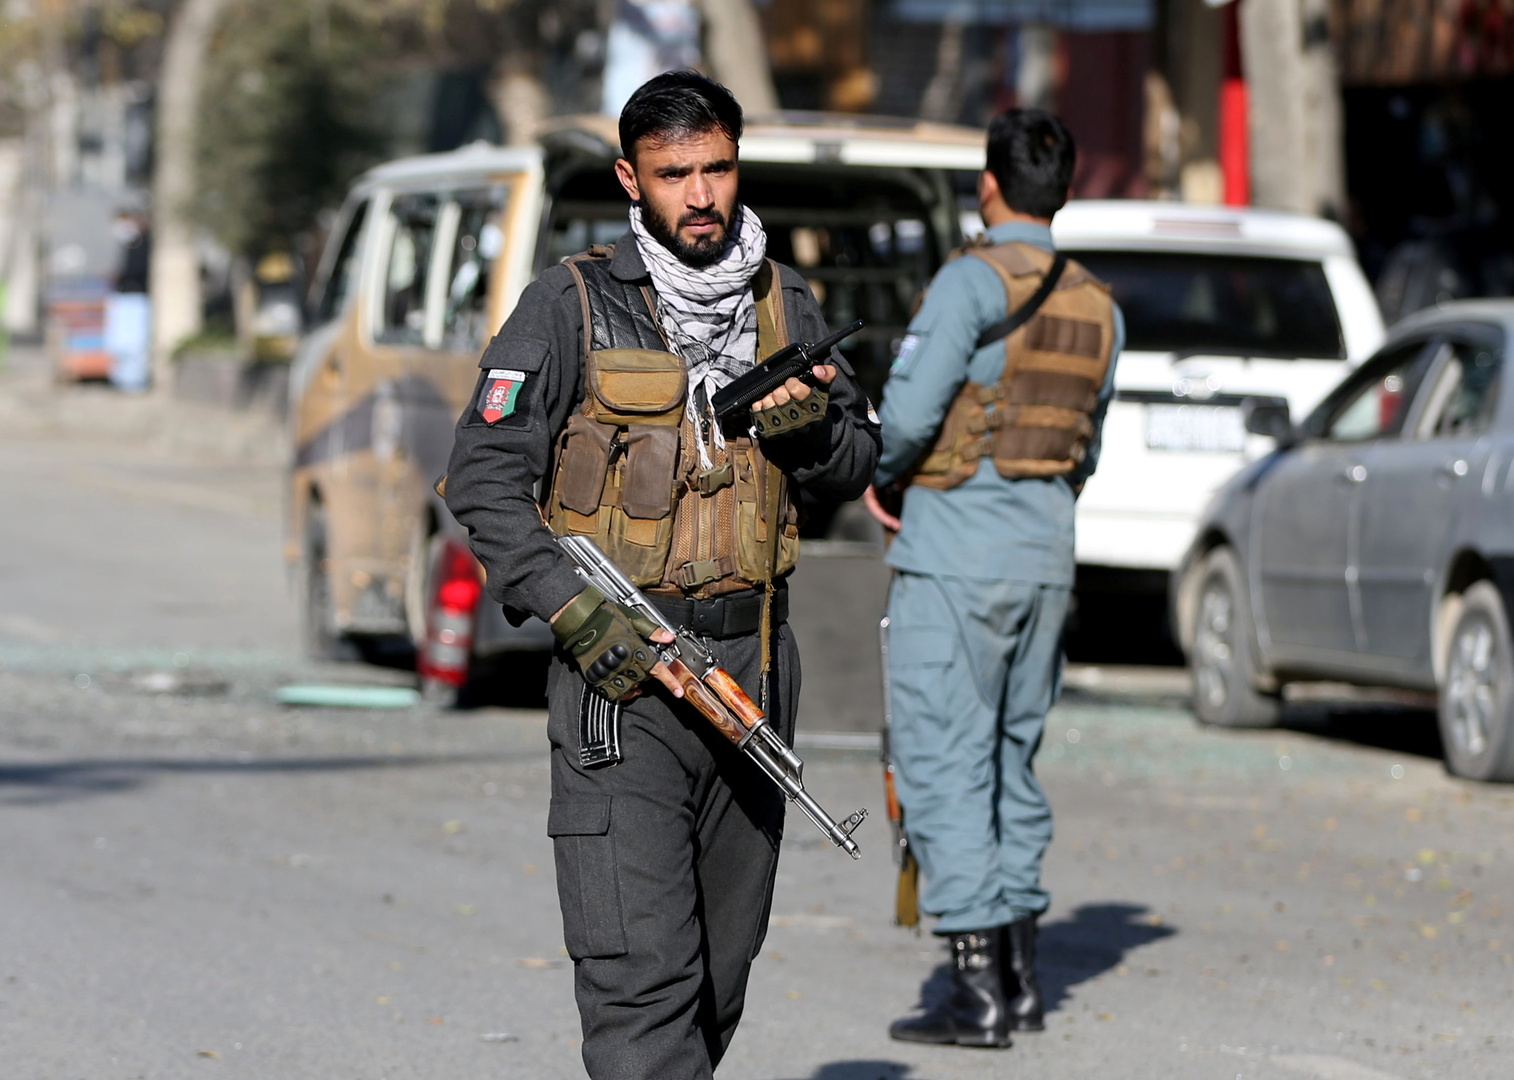 الجيش الأفغاني يعلن مقتل 27 مسلحا في غارات جوية